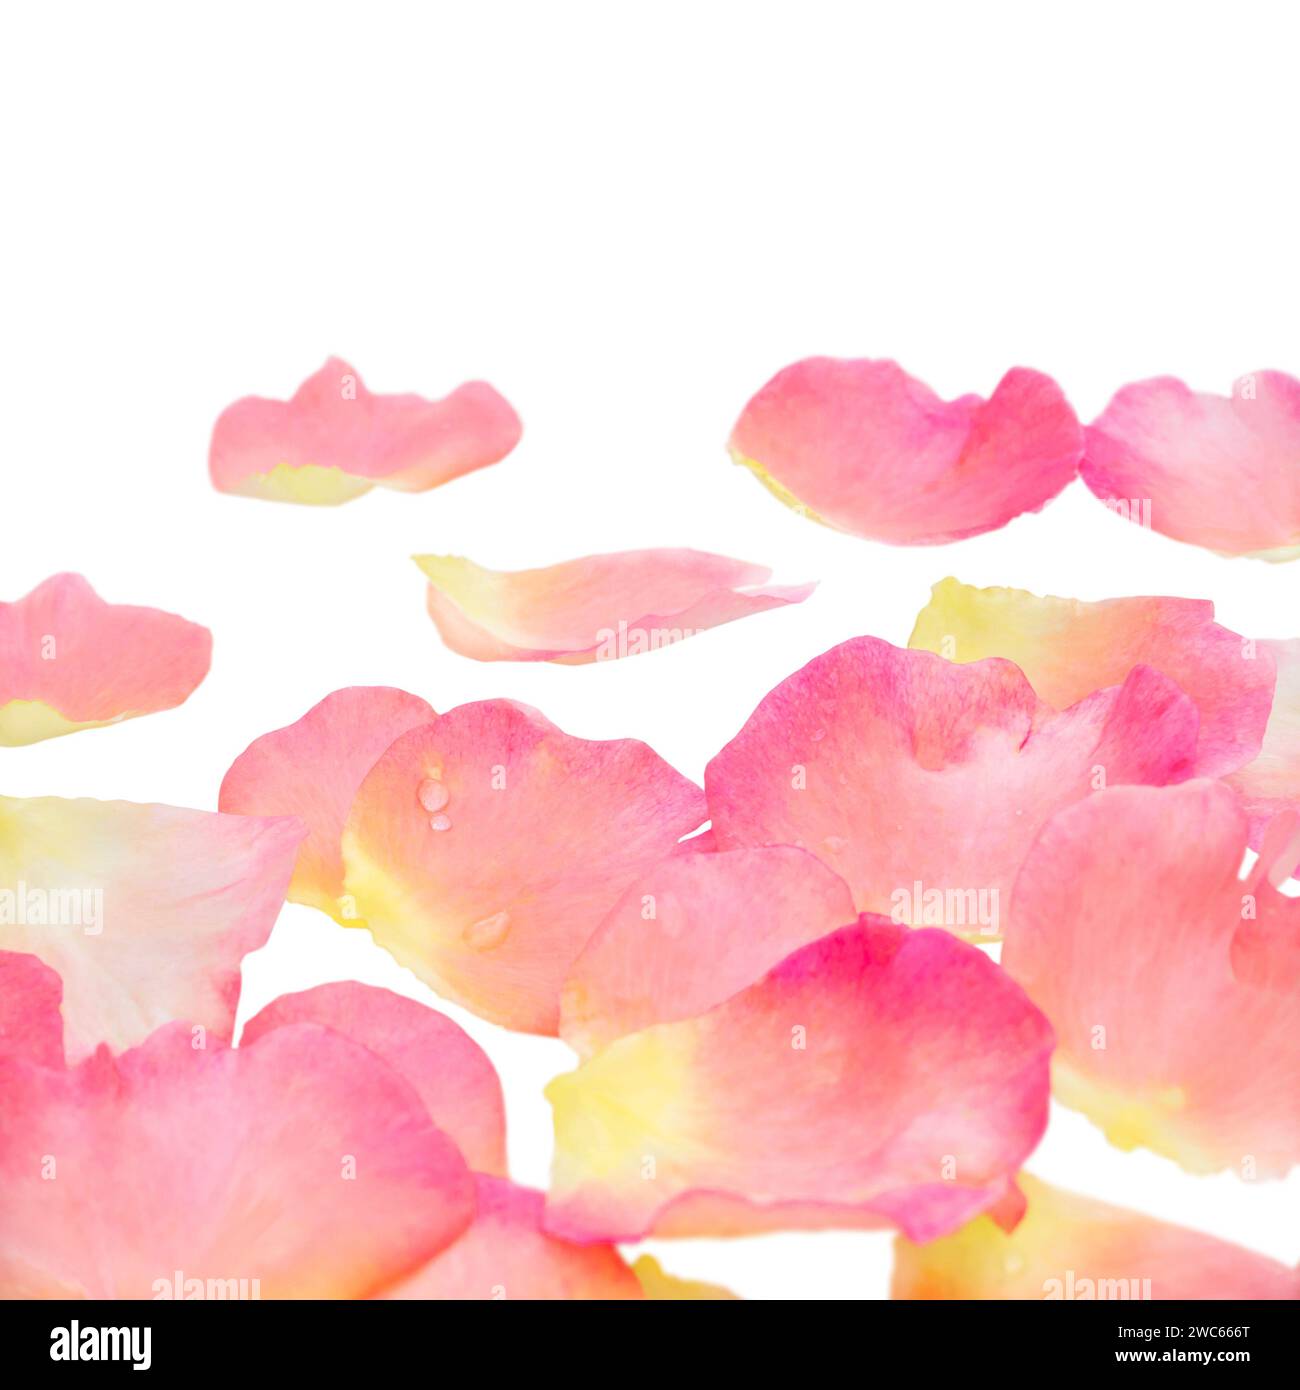 Rosafarbene Rosenblätter häufen sich mit Wassertropfen auf weiß. Shallow Focus.Flower-Geschenkgutschein für Muttertag, Valentinstag. Hochzeitseinladung. Stockfoto